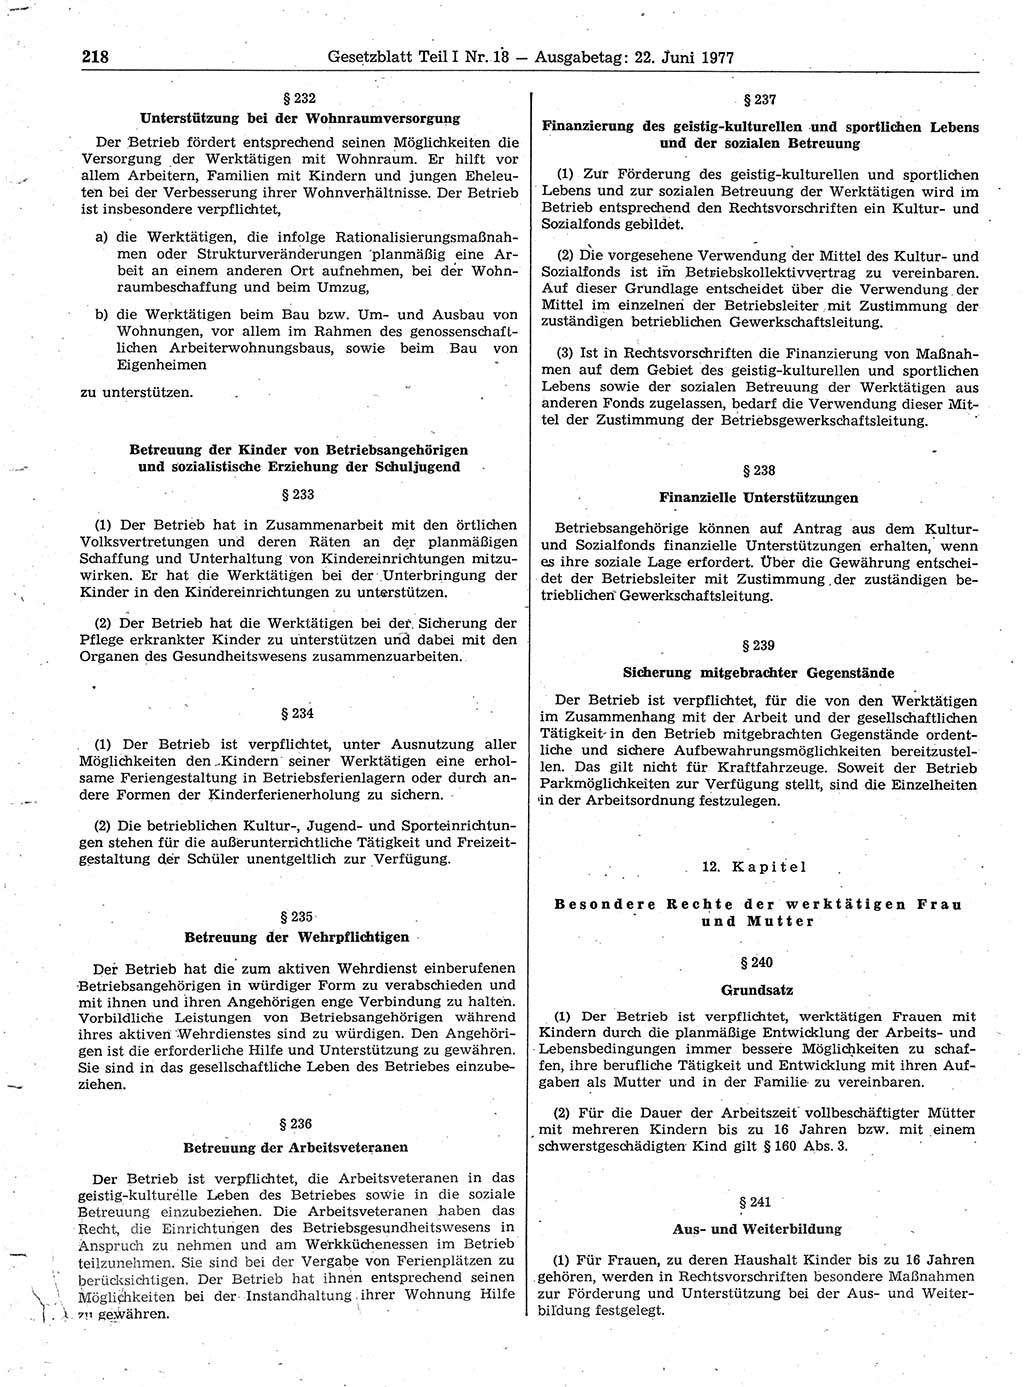 Gesetzblatt (GBl.) der Deutschen Demokratischen Republik (DDR) Teil Ⅰ 1977, Seite 218 (GBl. DDR Ⅰ 1977, S. 218)